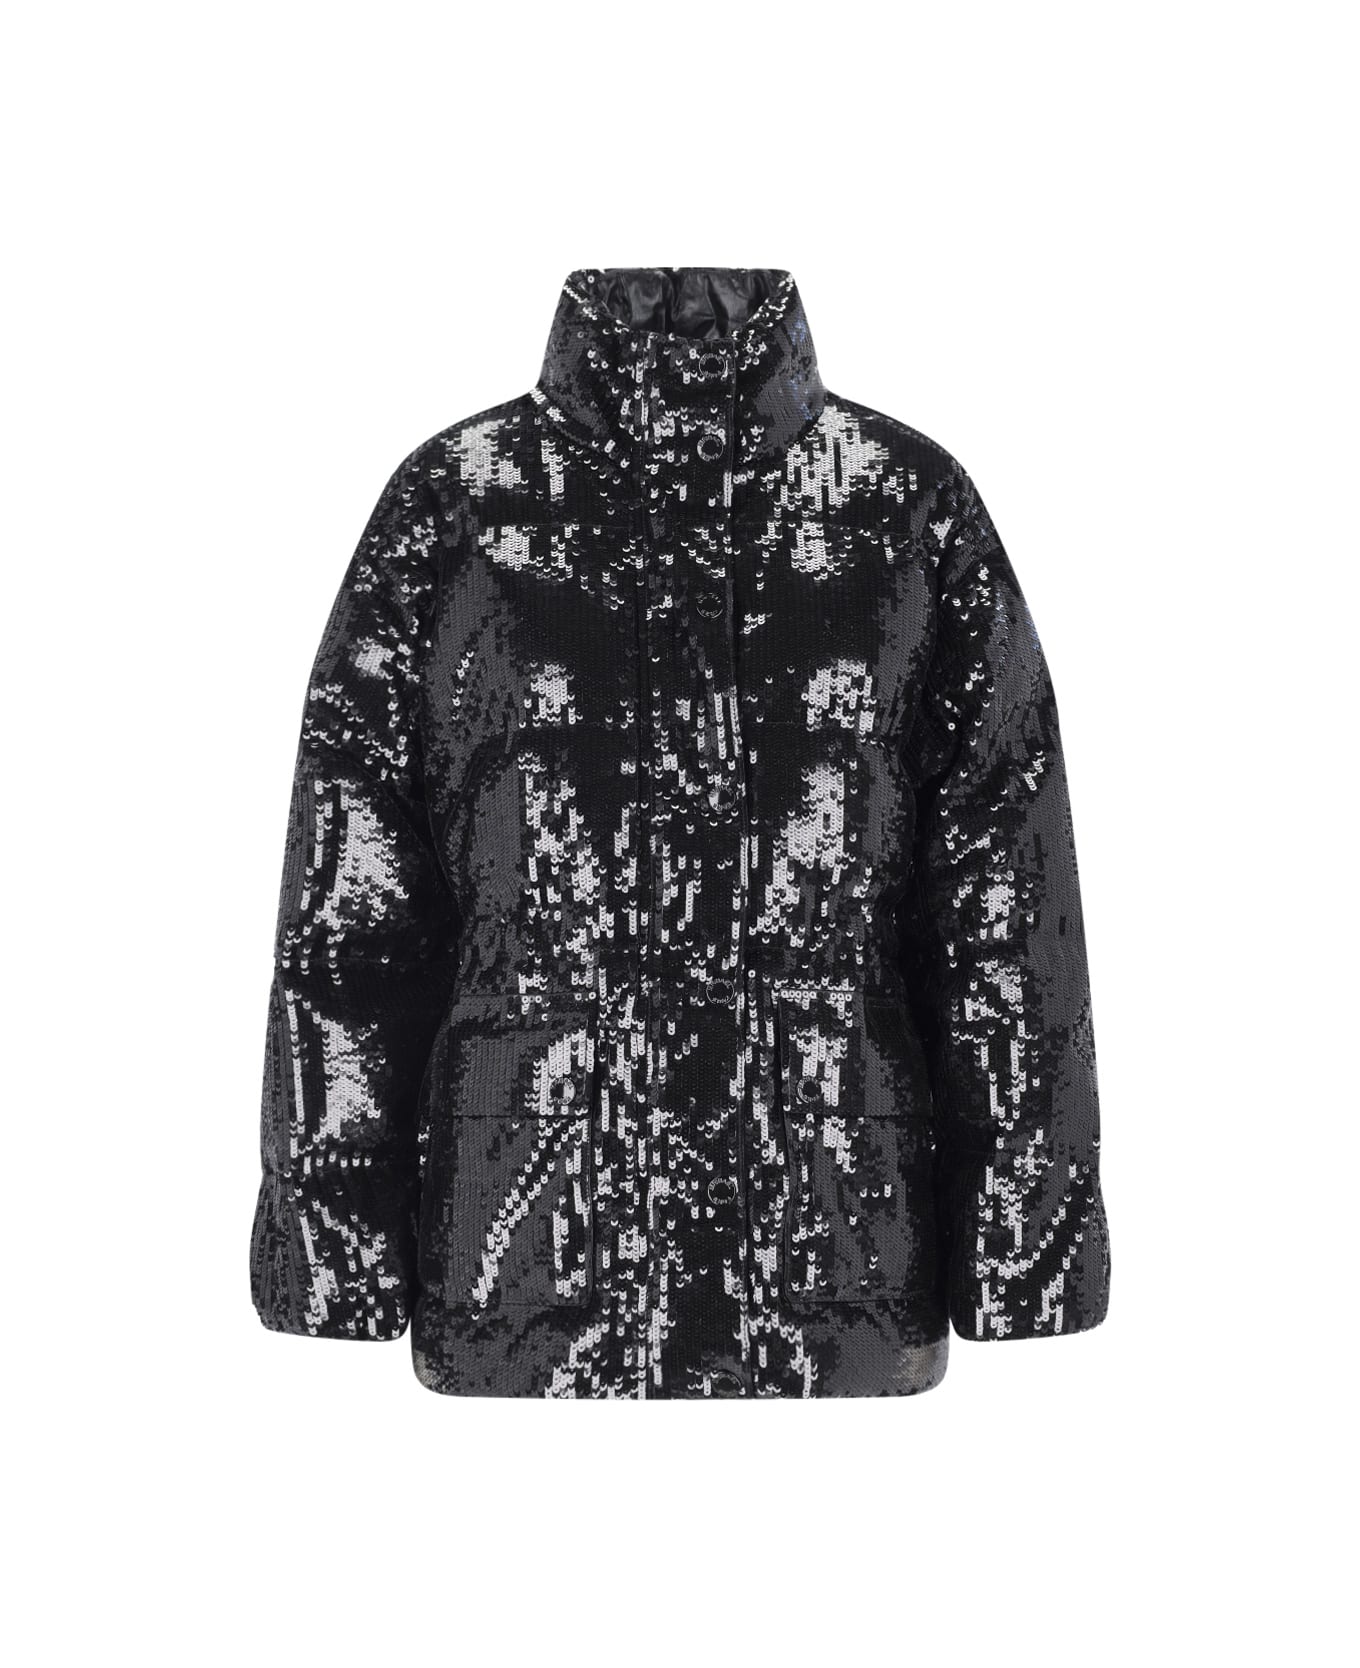 Michael Kors Sequin Embellished Puffer Jacket - Black